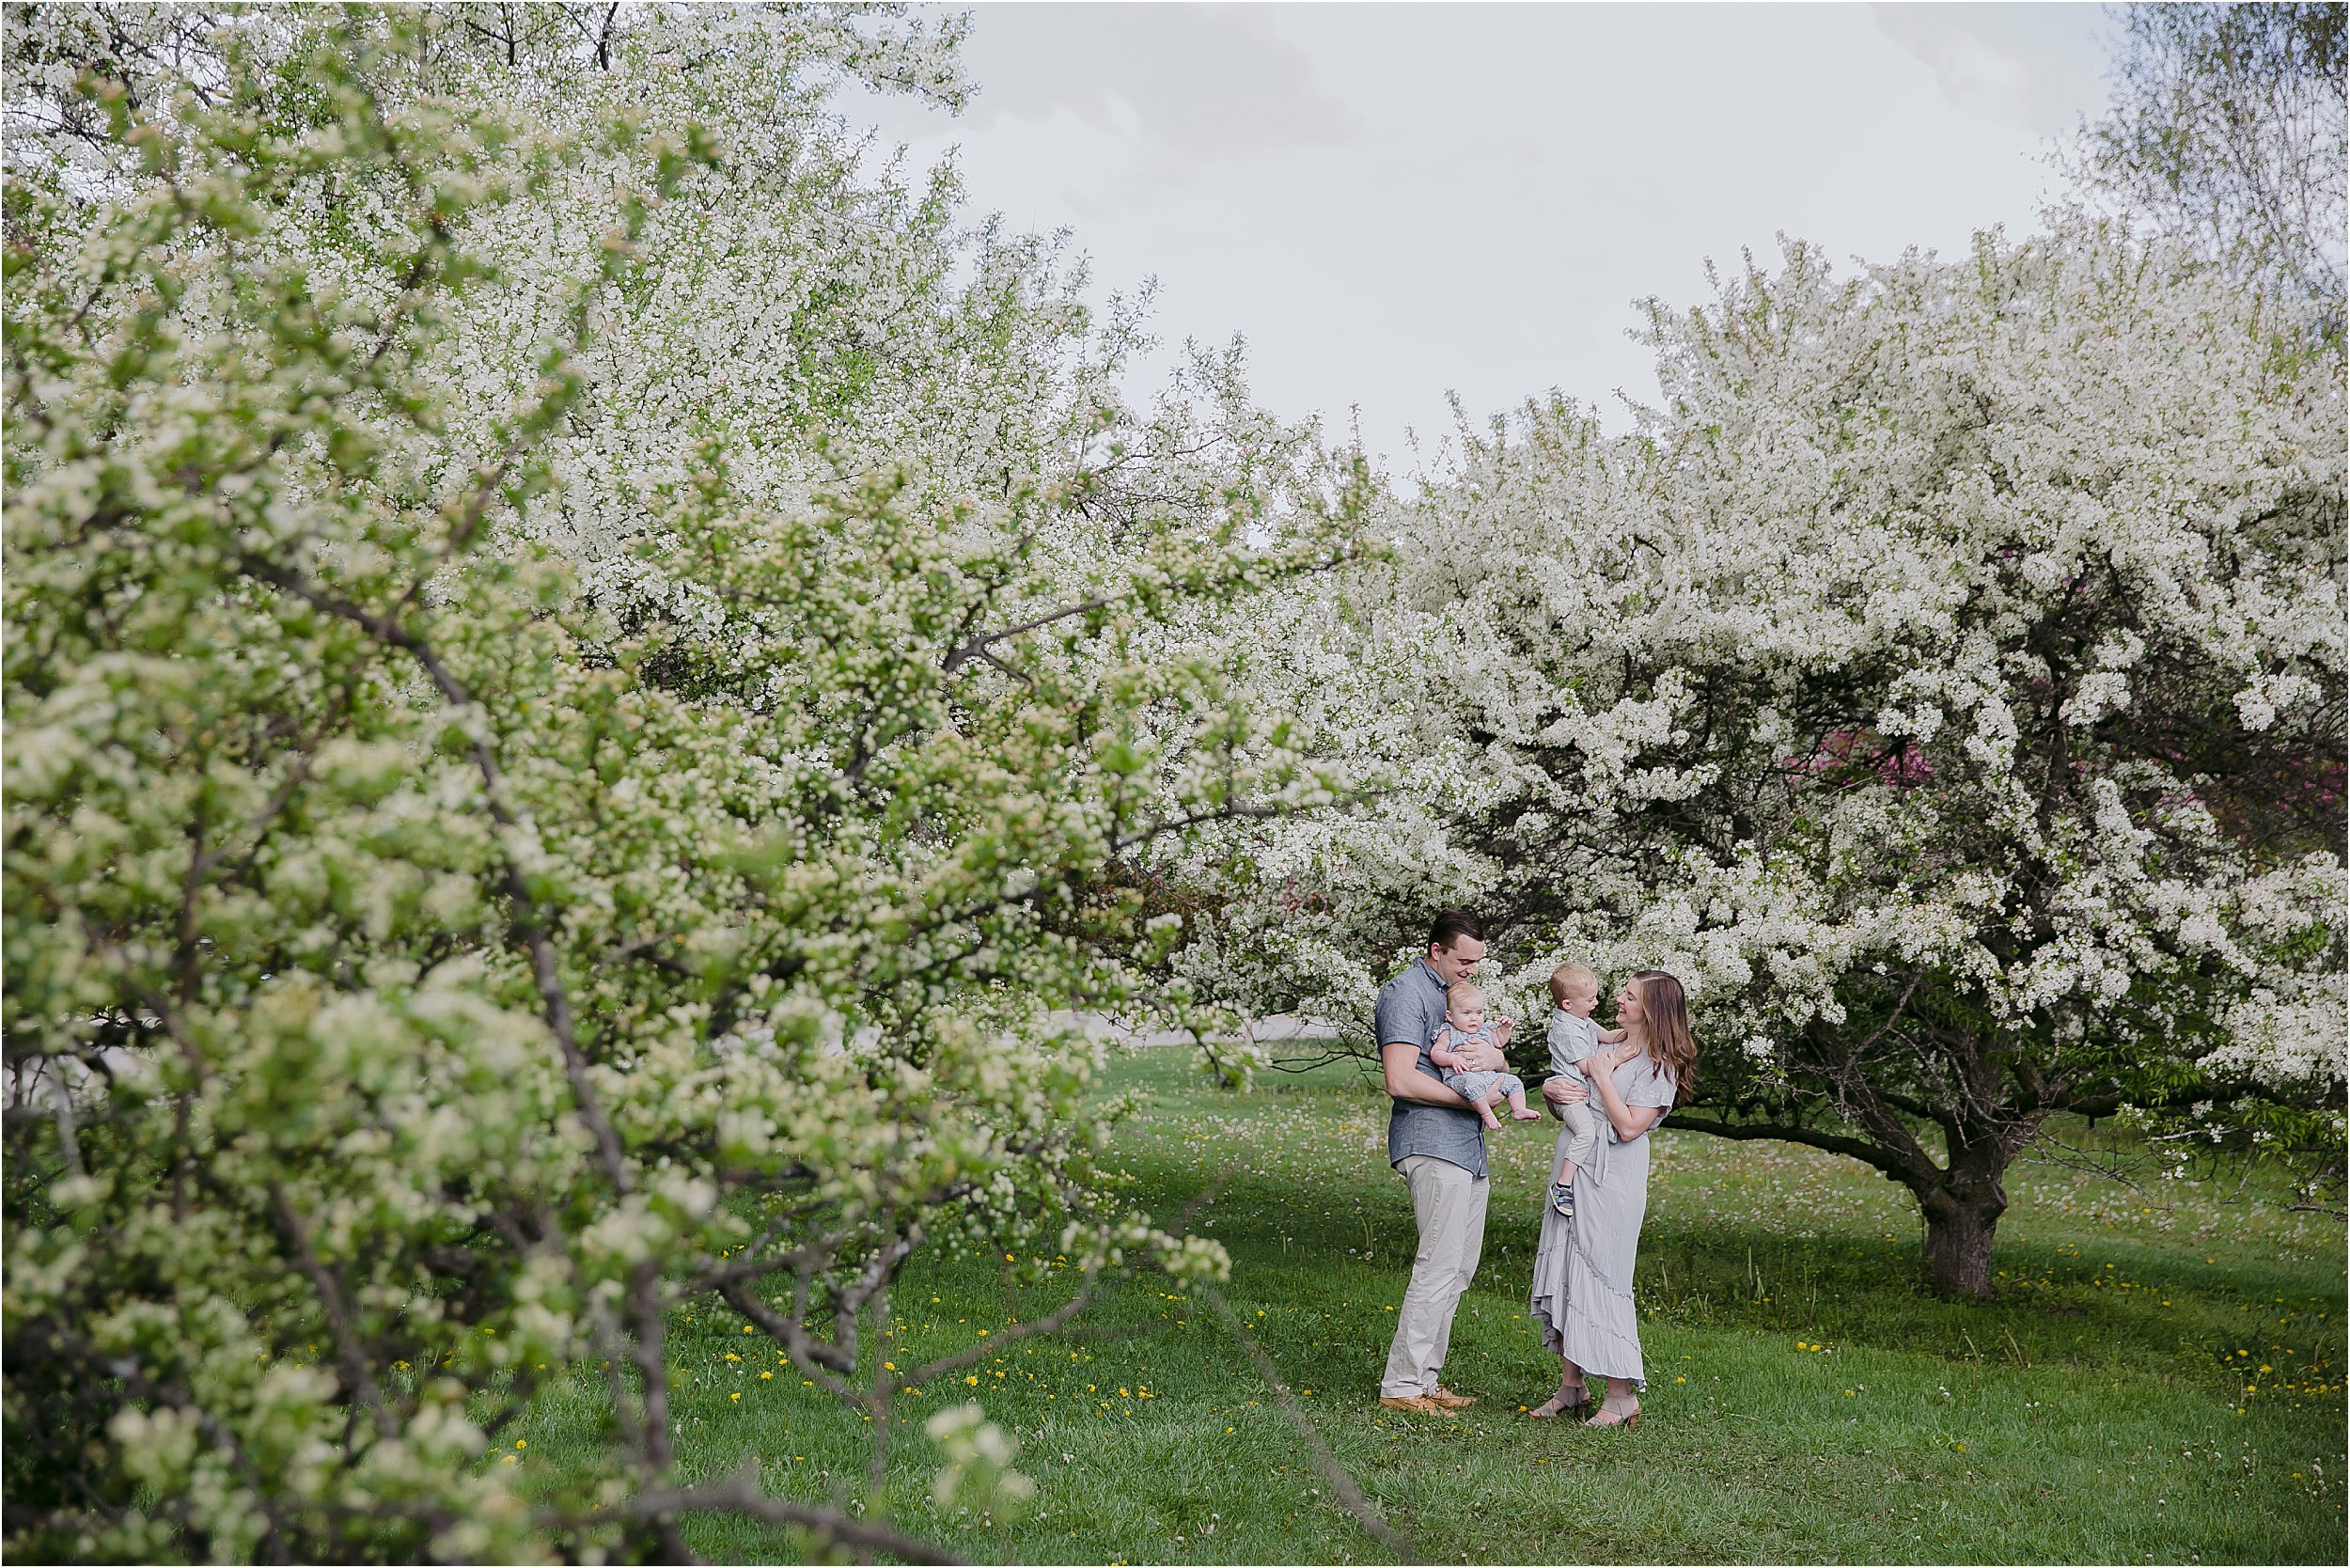 03-parents-holding-children-white-flowering-trees.JPG